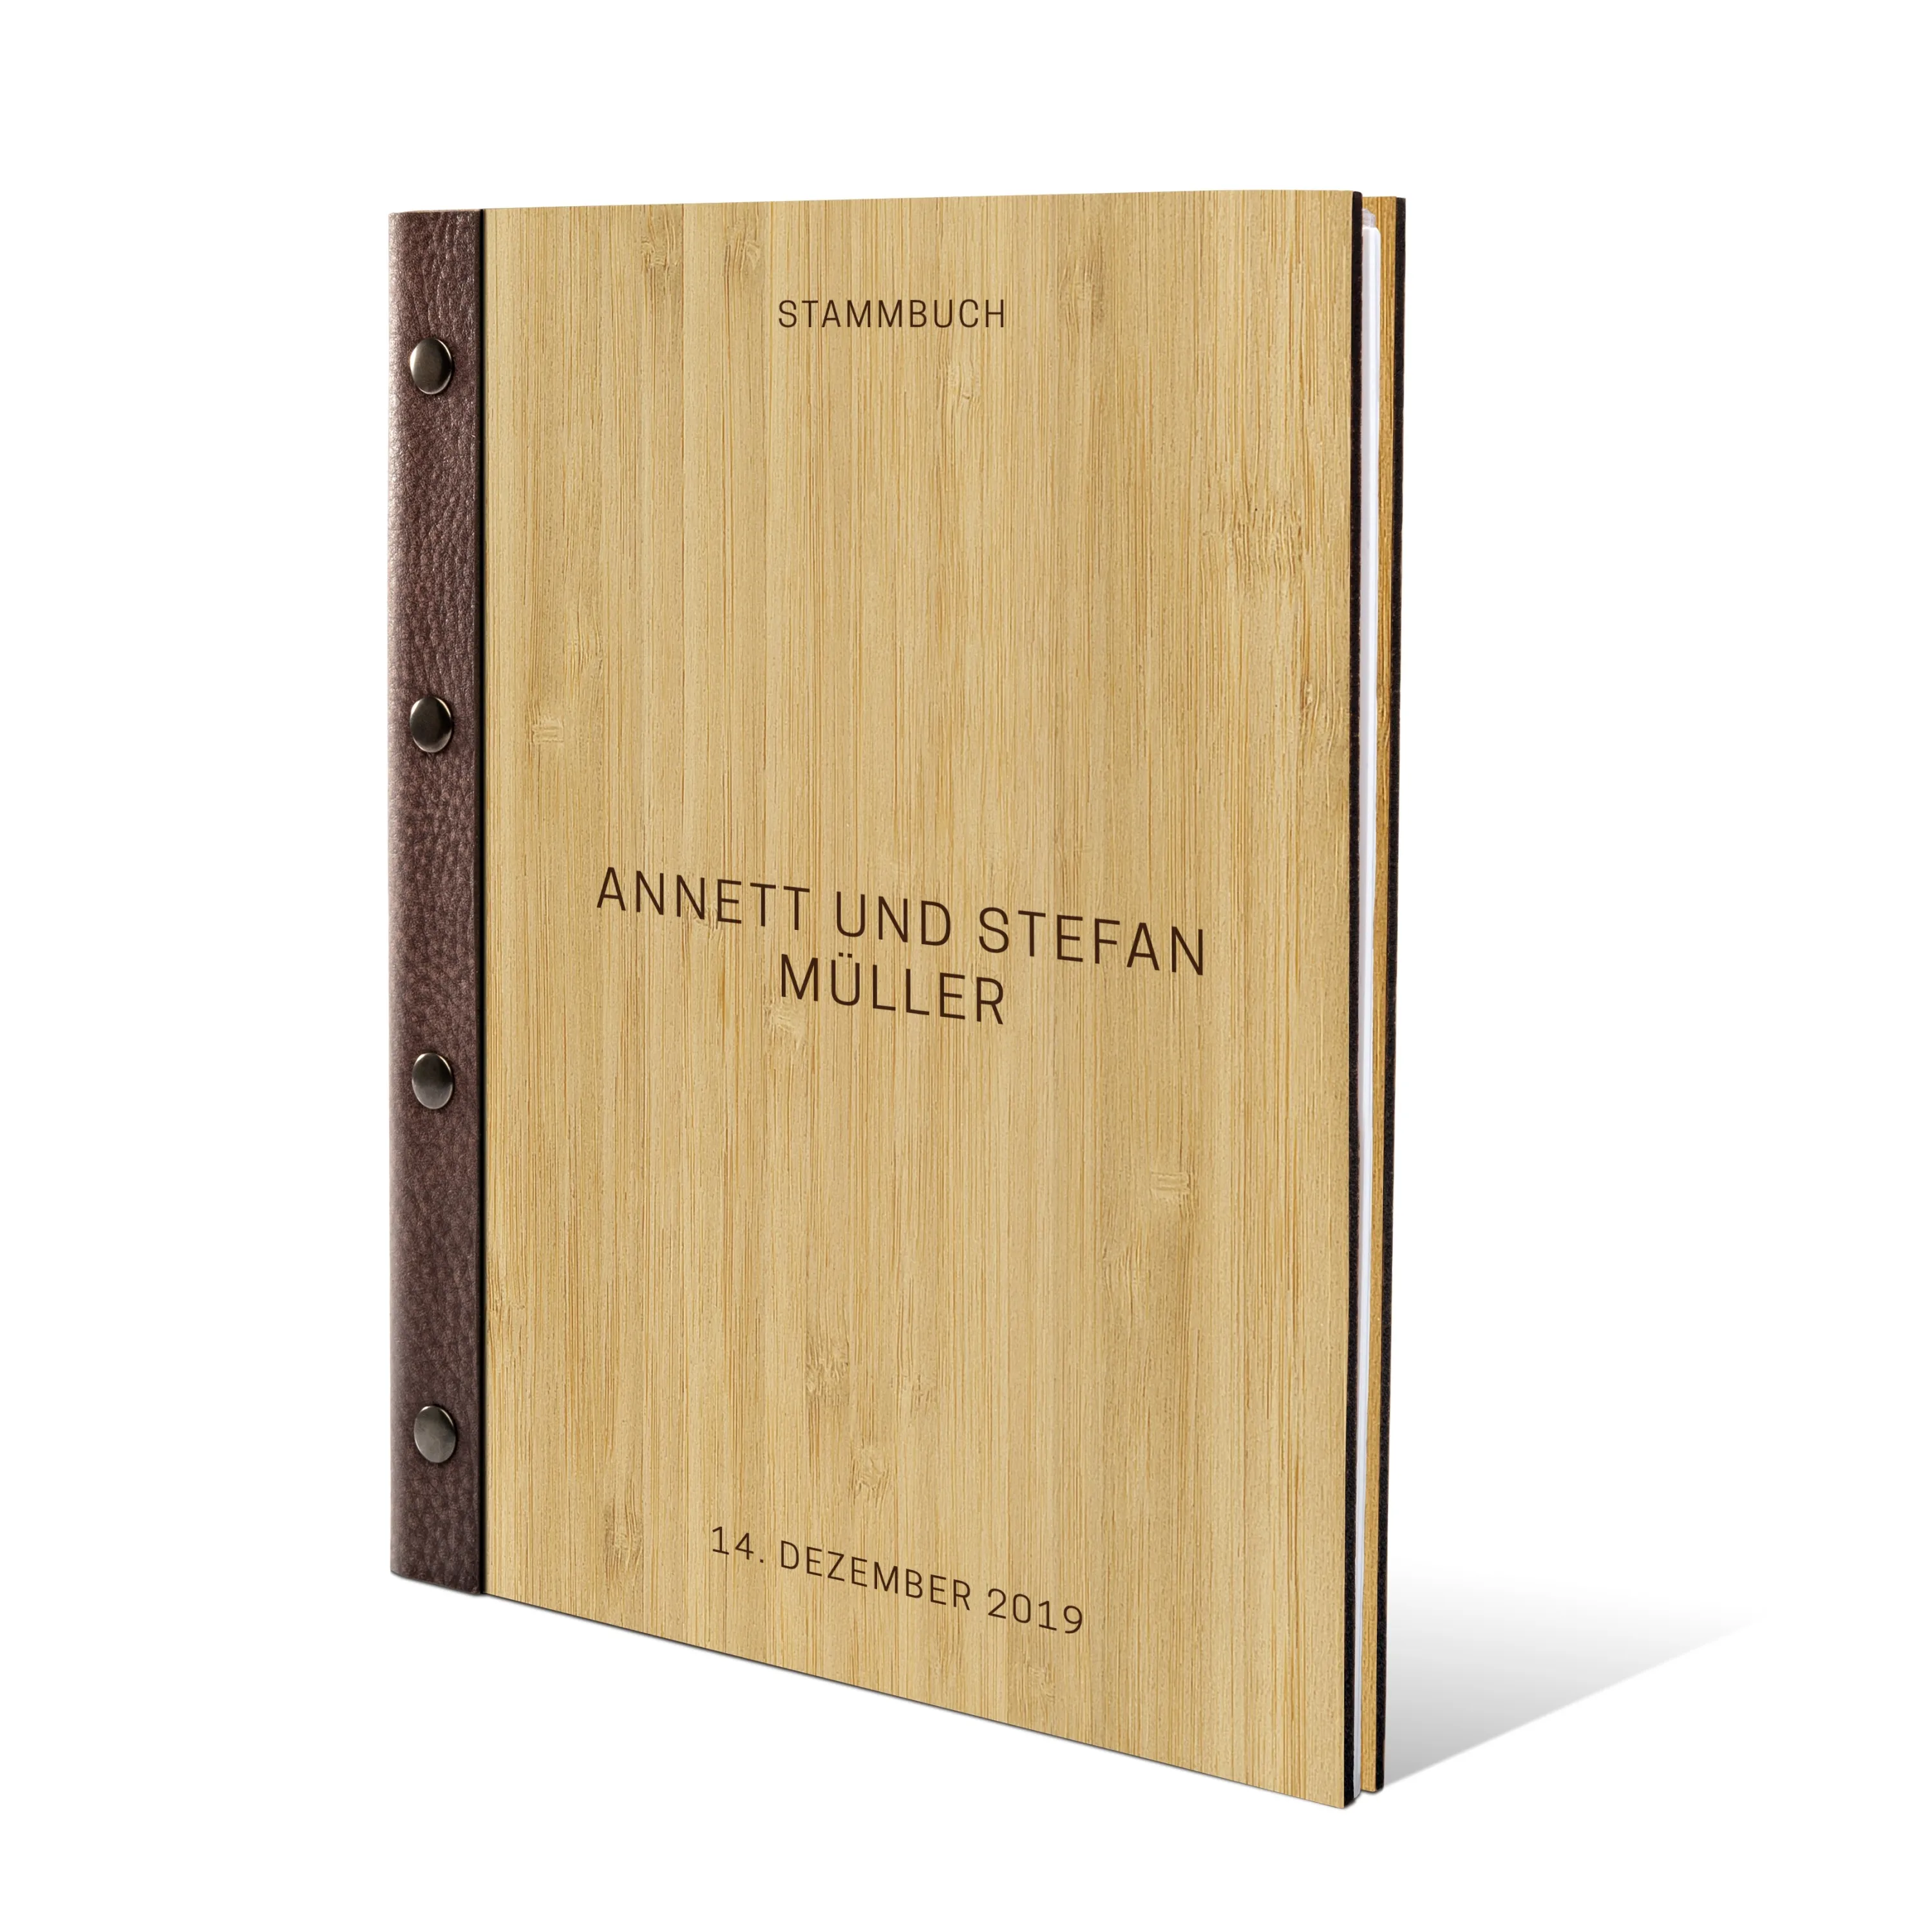 Personalisiertes Stammbuch Bambus Stammbuchformat - Schlicht